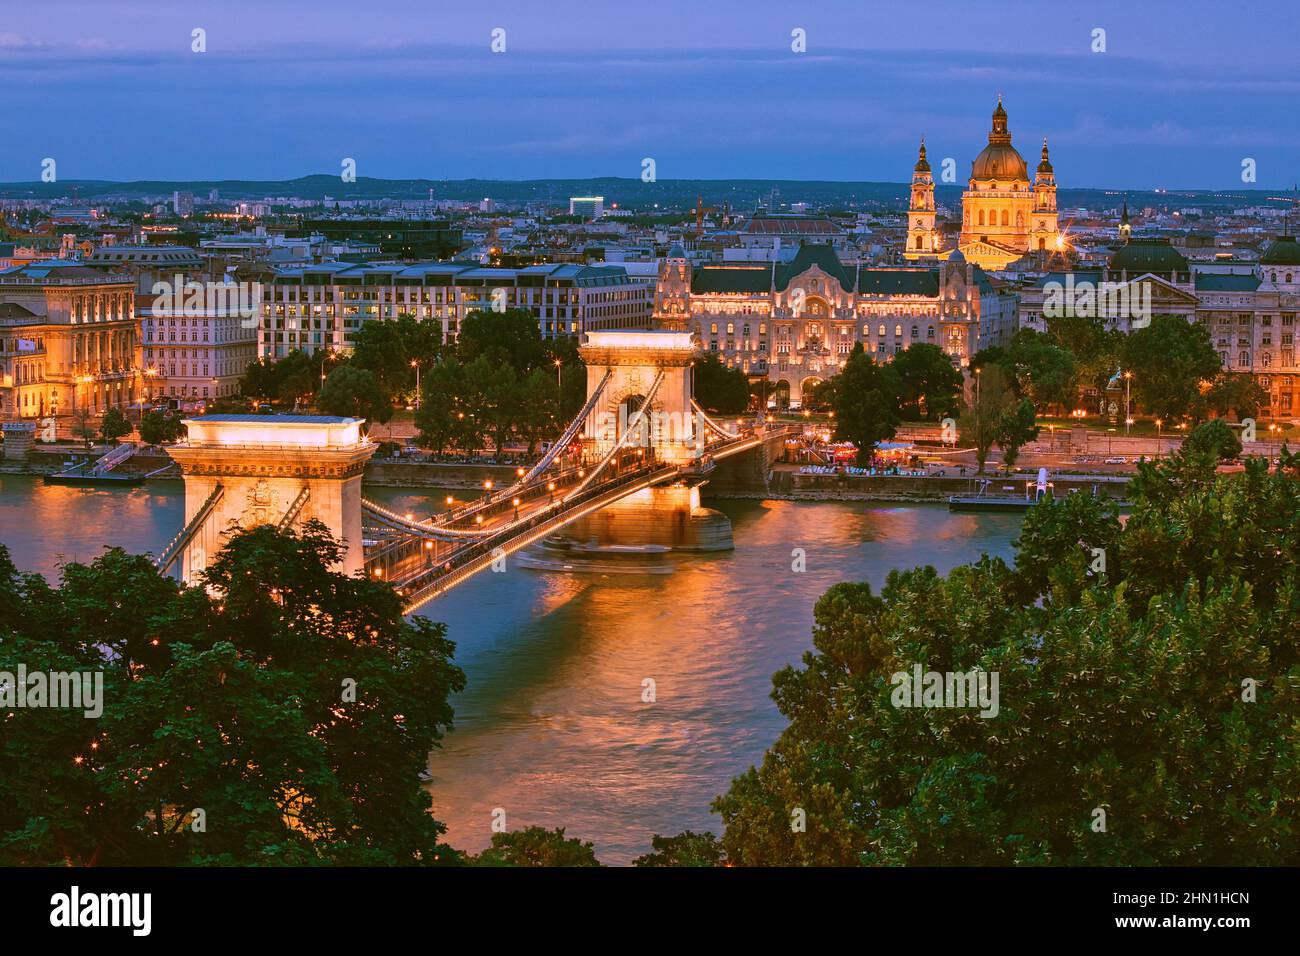 Vue sur le centre-ville de Budapest sur le Danube, magnifique paysage urbain après le coucher du soleil Banque D'Images